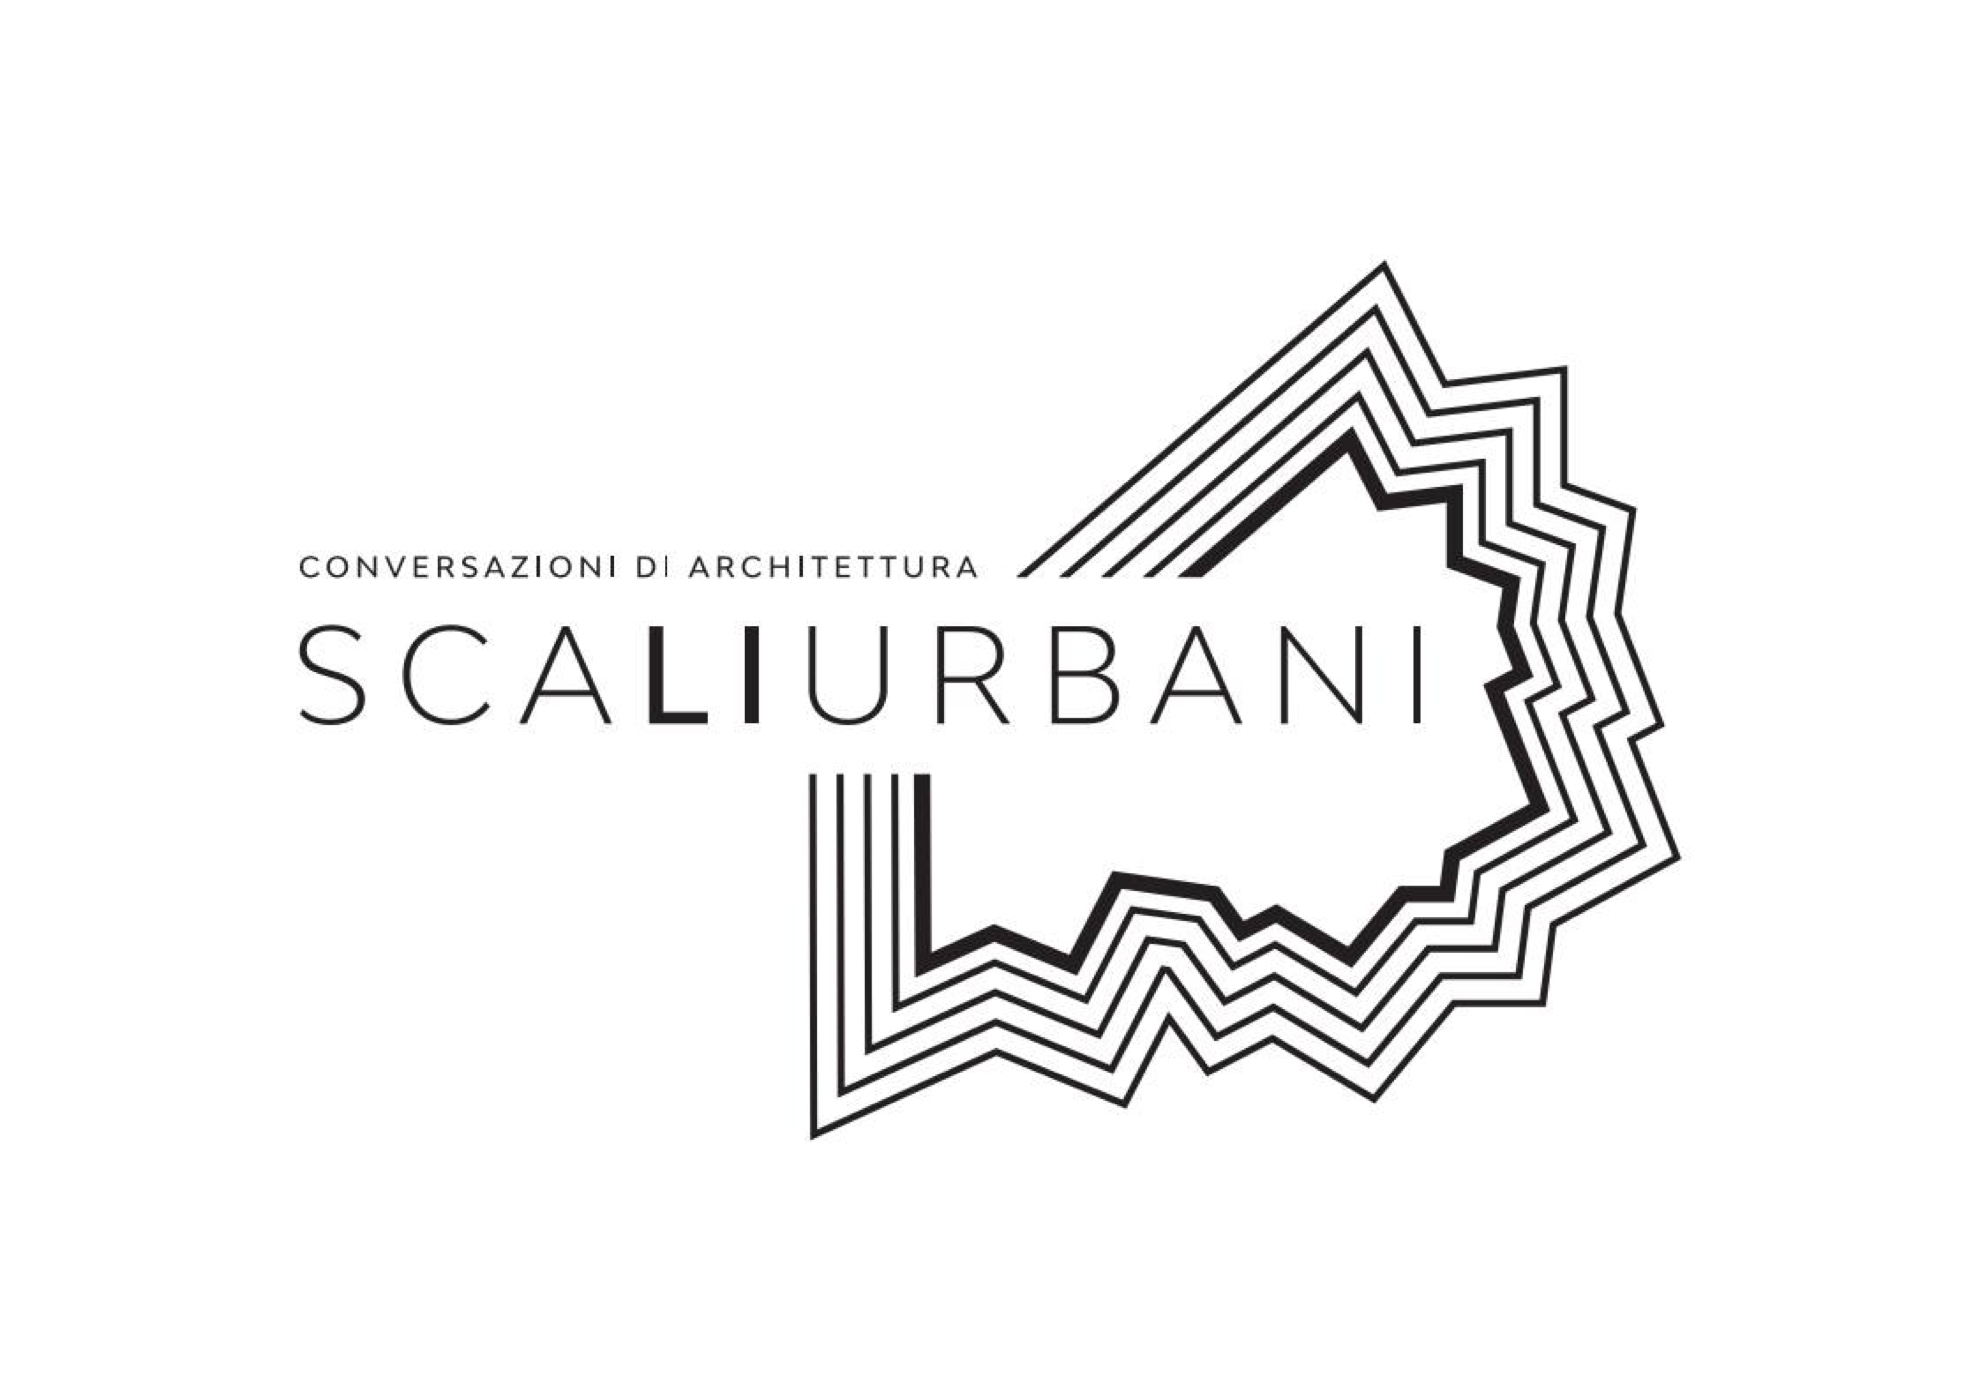 Scaliurbani Architecture Conversations in Livorno | Livegreenblog